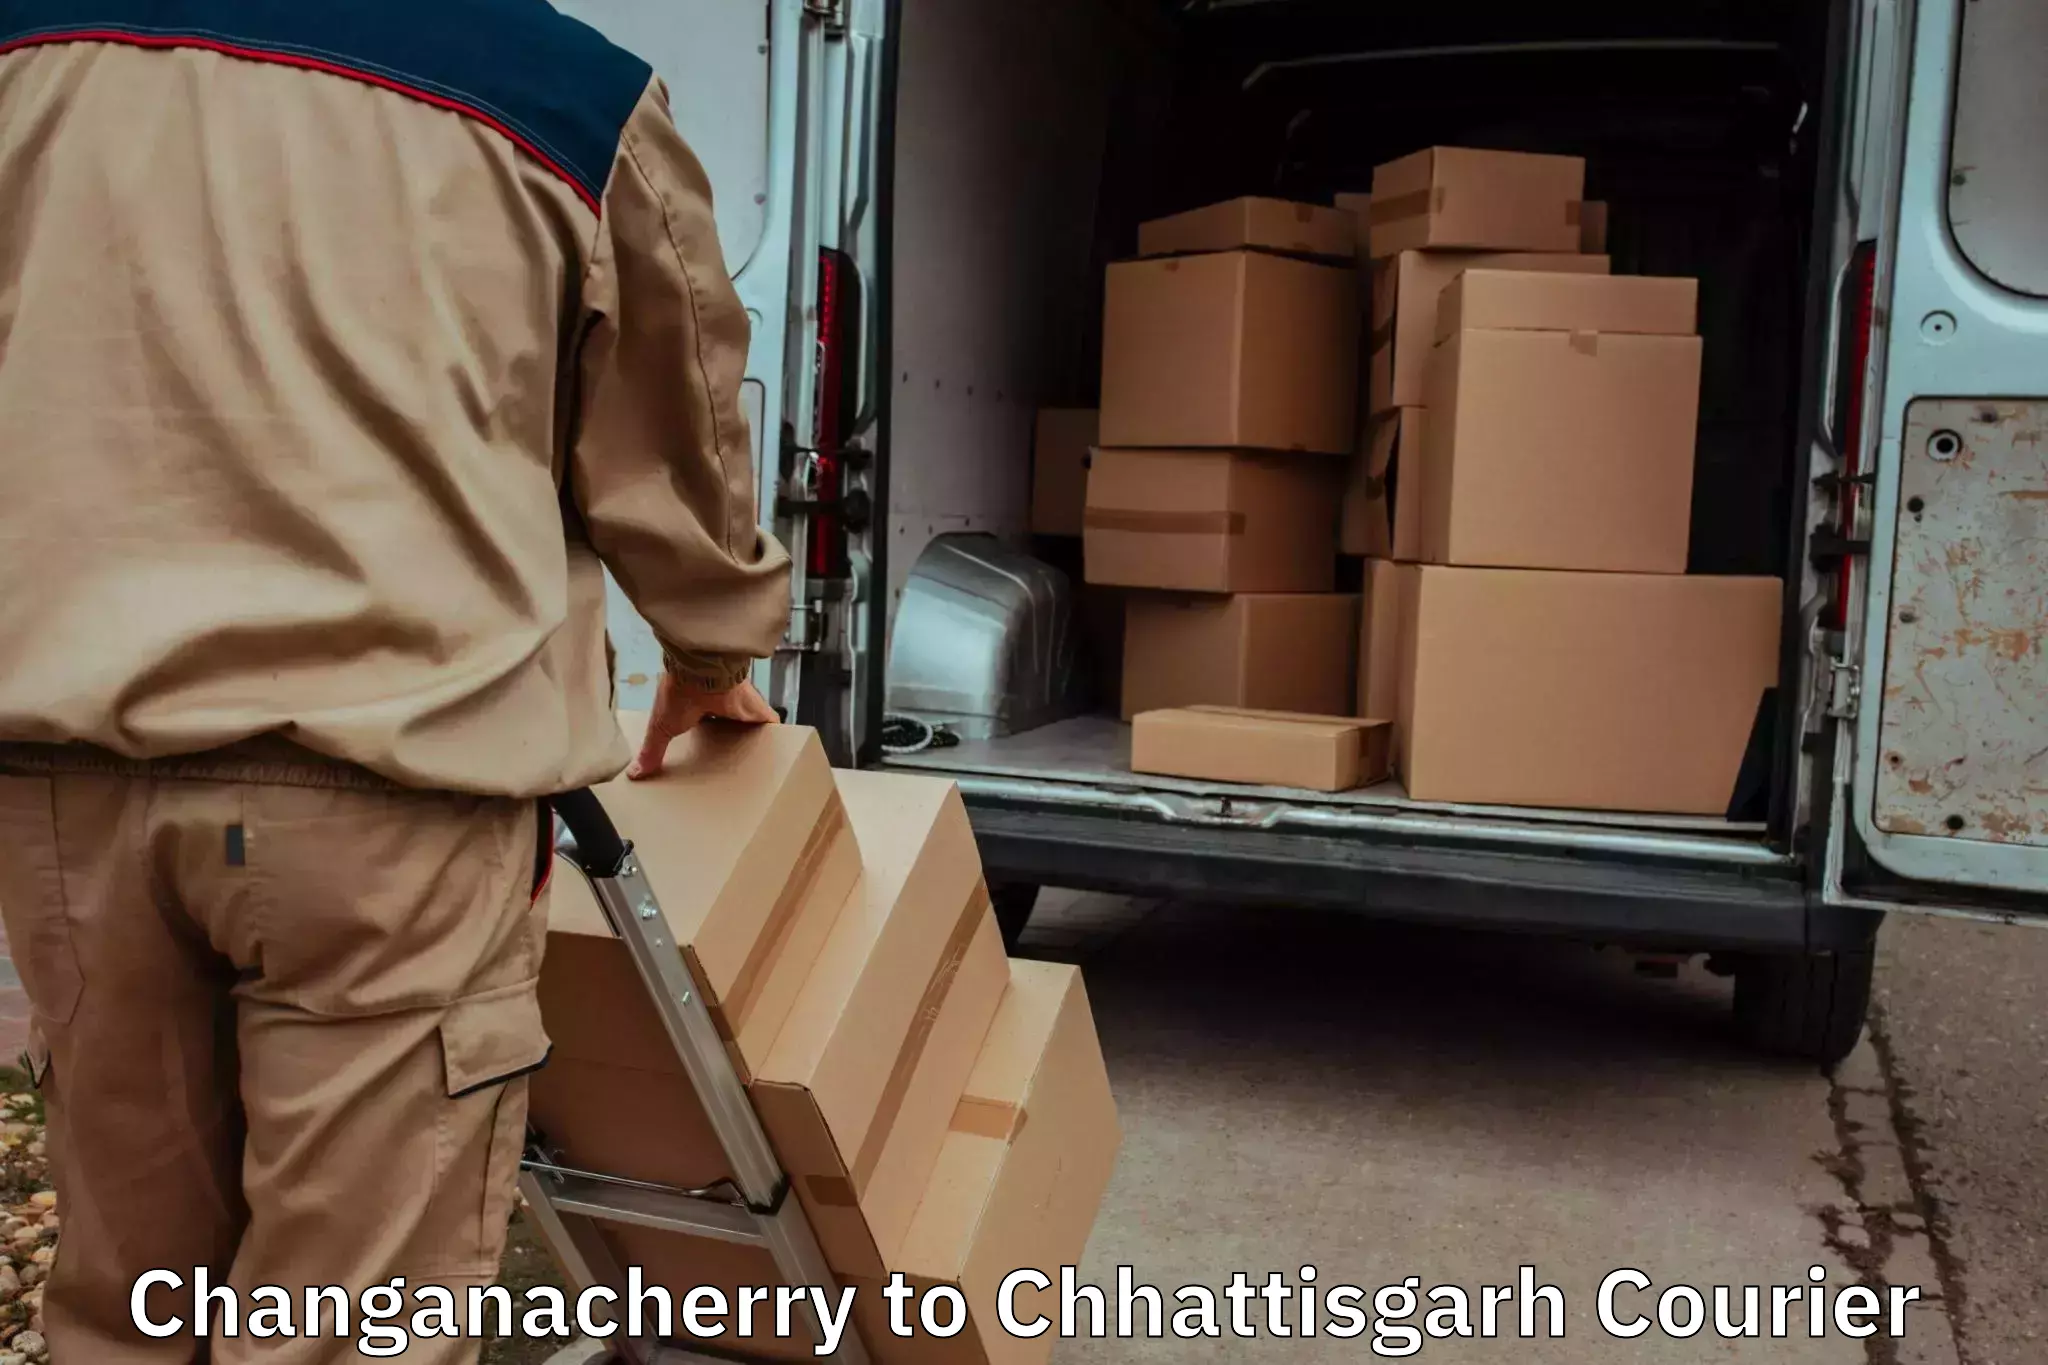 Budget-friendly movers in Changanacherry to Chirimiri